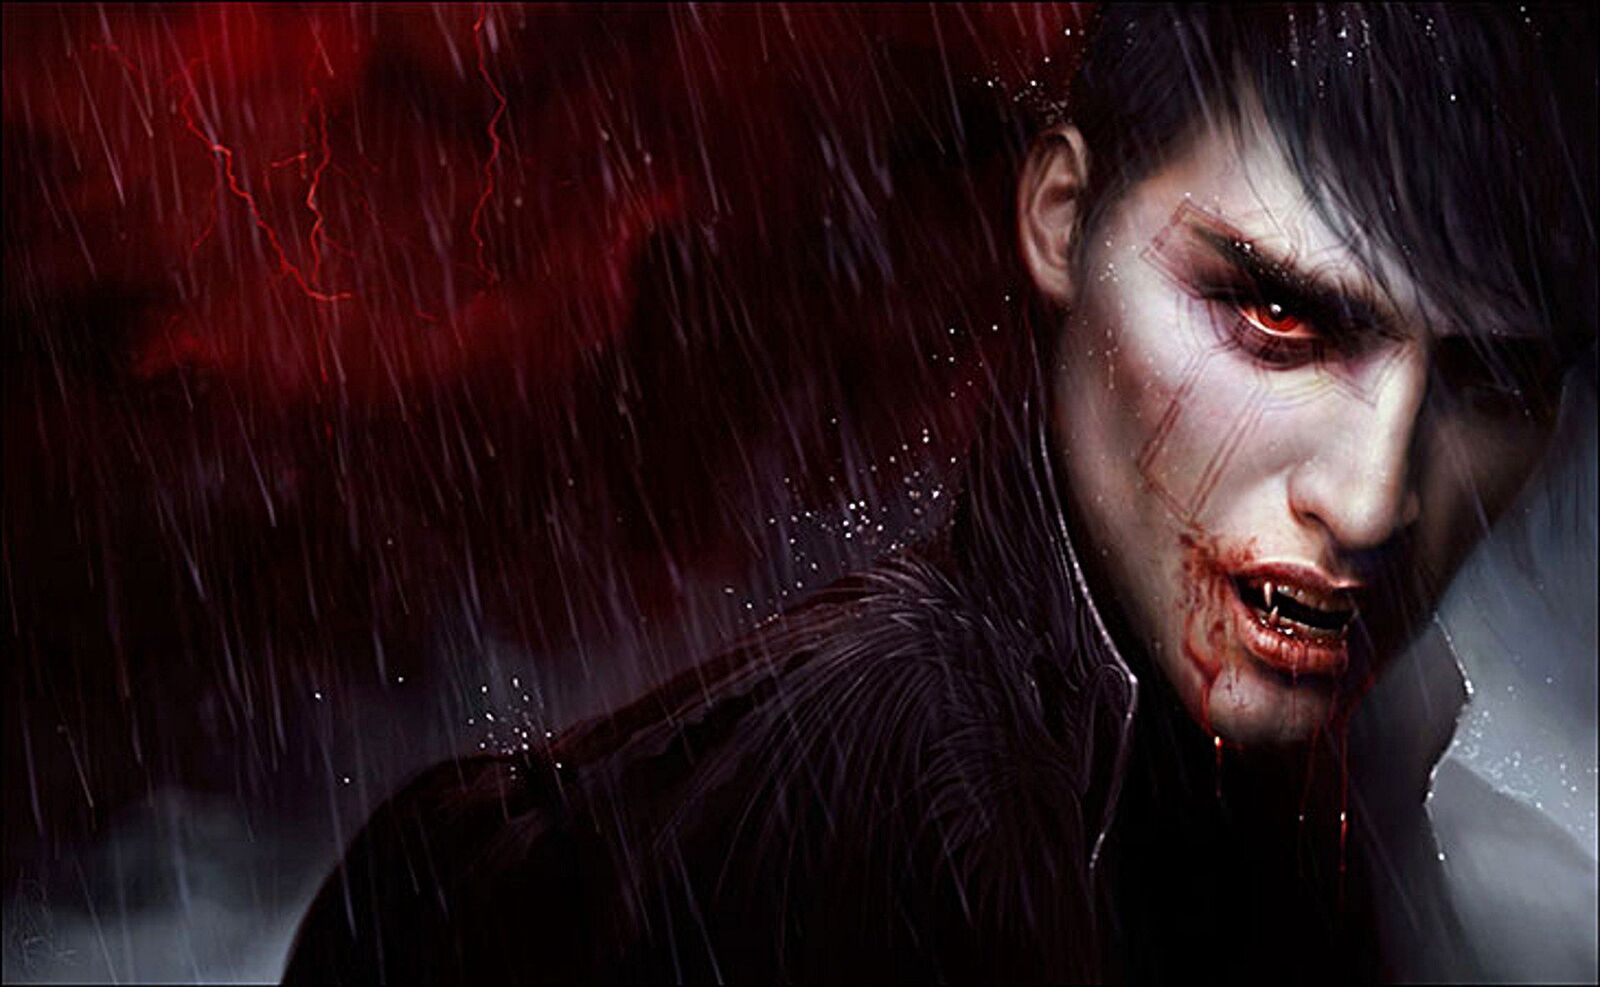 Historie miłosne wampirów i ludzi zatytułowane obsesja wampirów na punkcie ludzkości